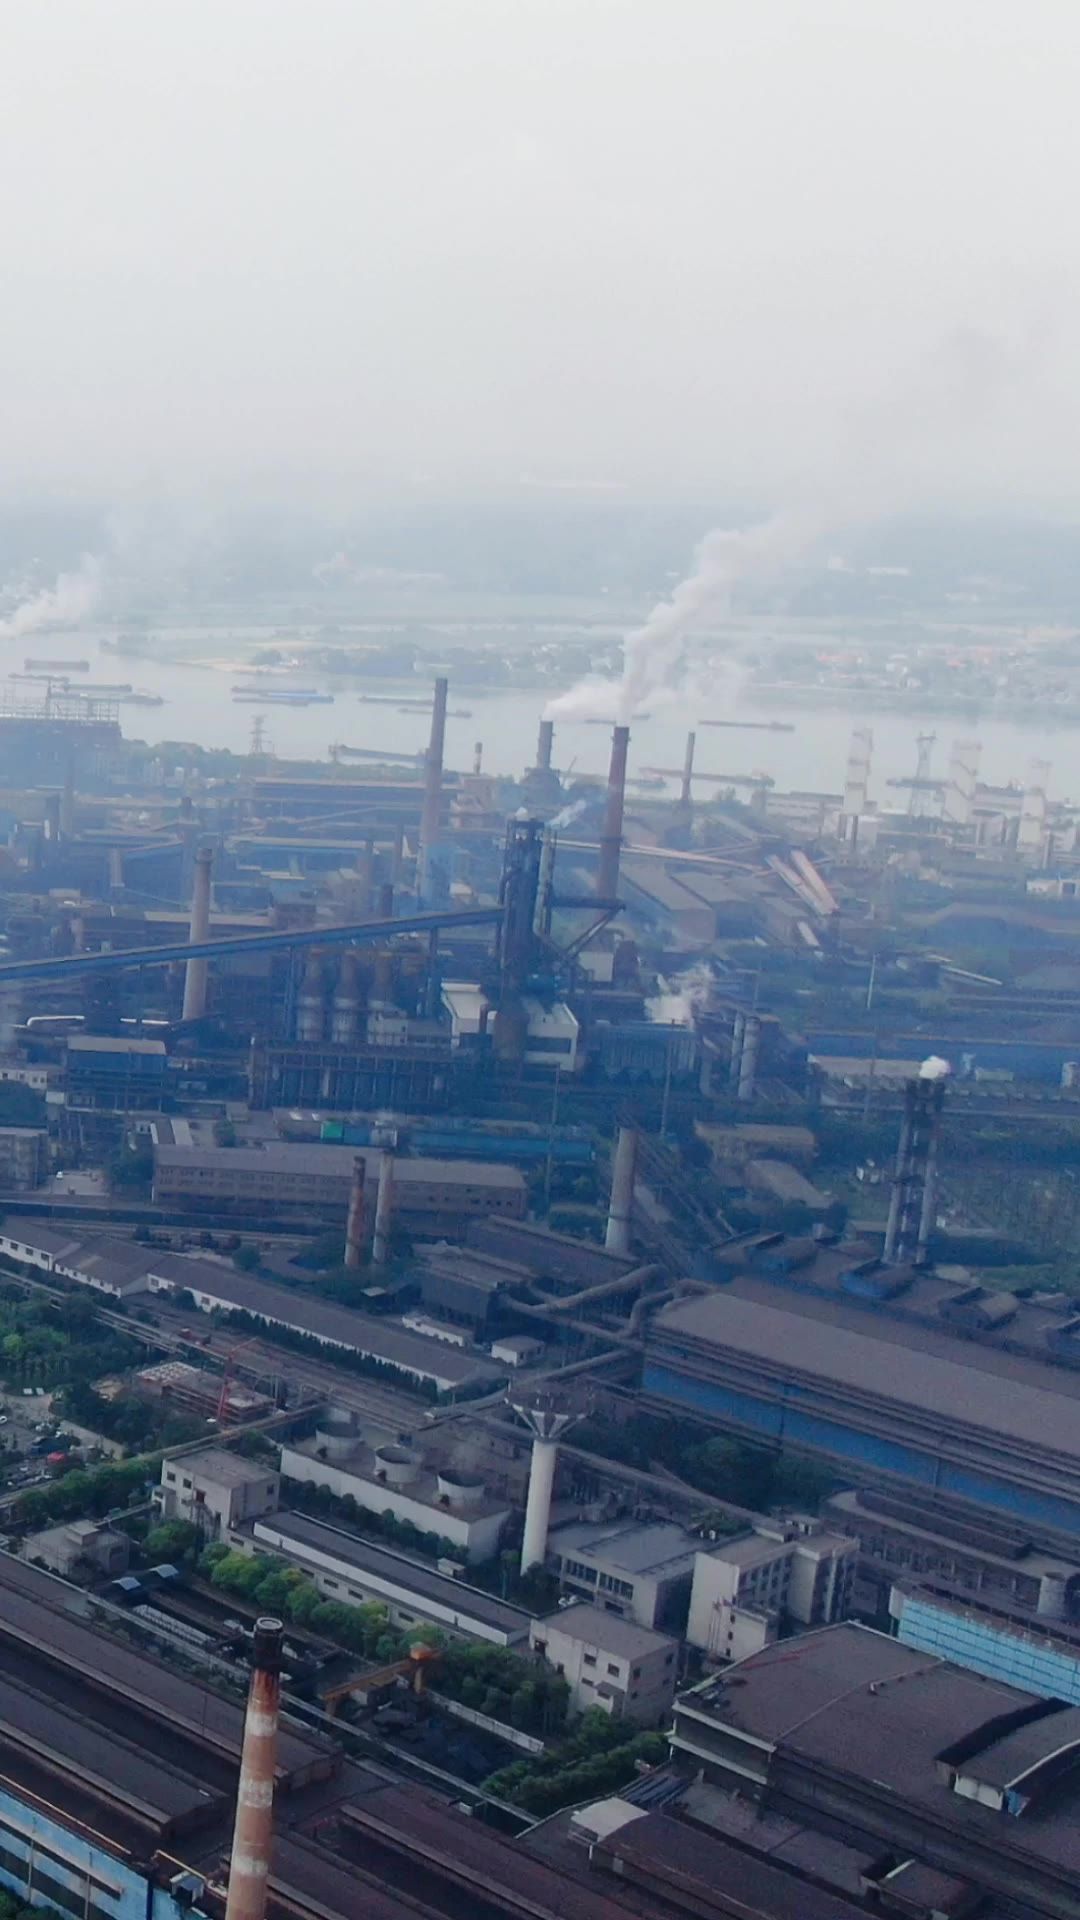 航拍工业生产工厂烟冲污染